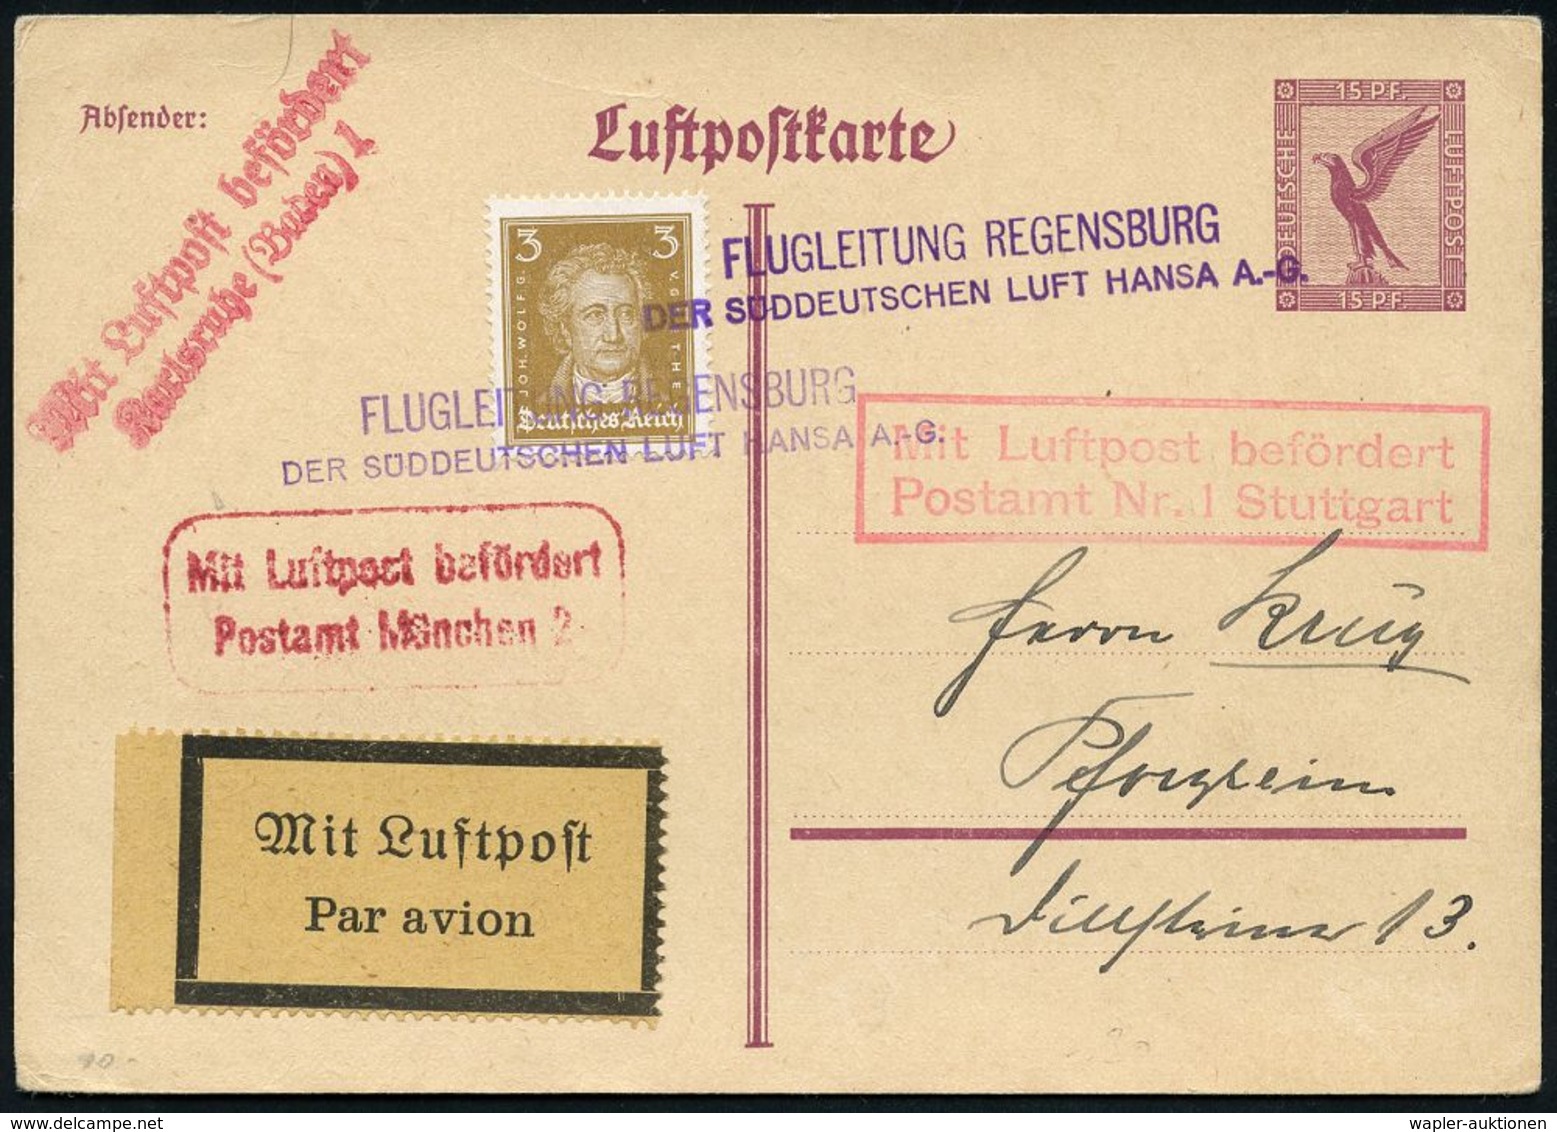 FLUGHAFEN / FLUGHAFEN-POSTÄMTER : Regensburg 1926 (ca.) Viol. 2L: FLUGLEITUNG REGENSBURG/ DER SÜDDEUTSCHEN LUFT HANSA A. - Autres (Air)